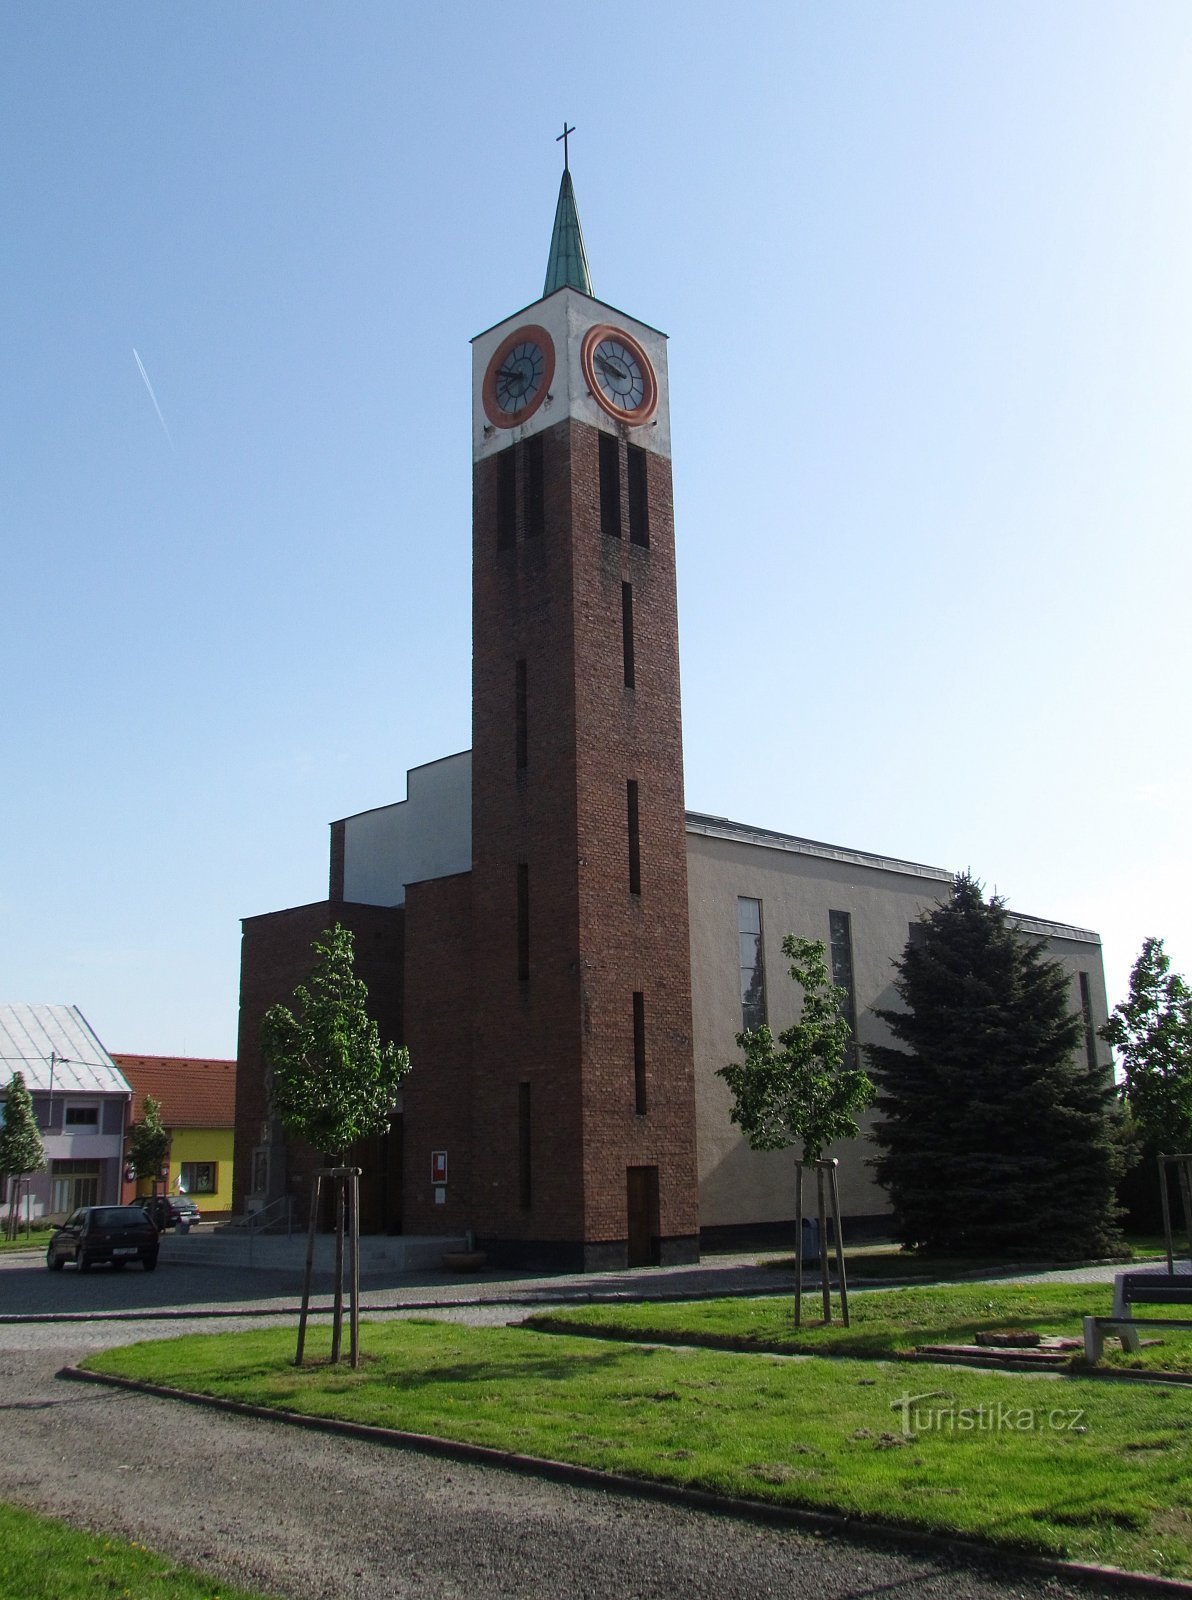 Мишковице - церковь из Гахуры